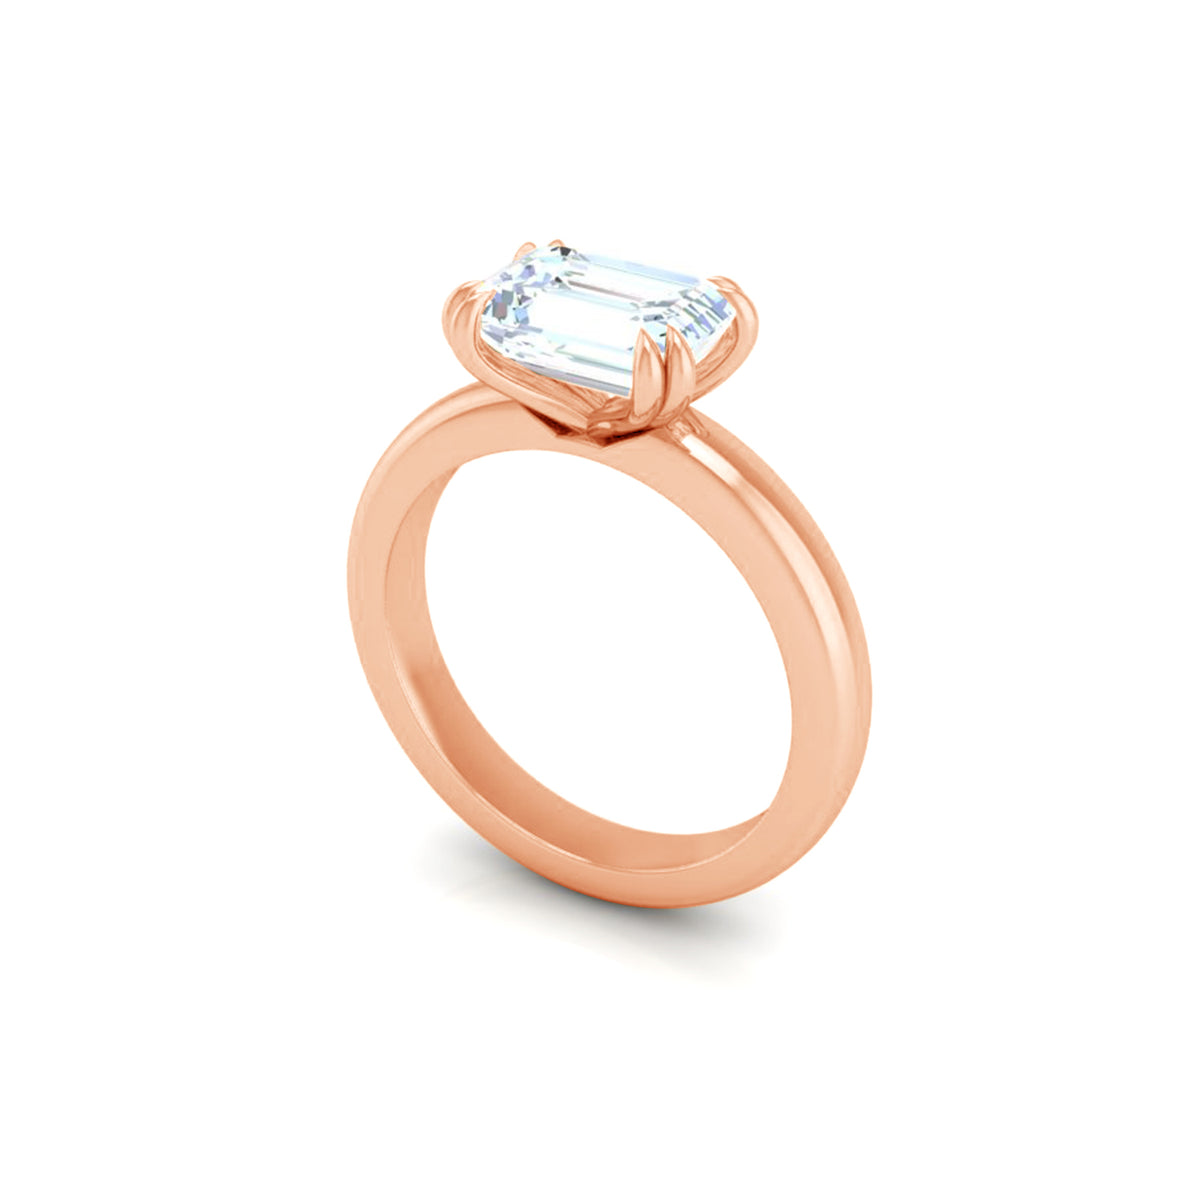 Leda Emerald Engagement Ring